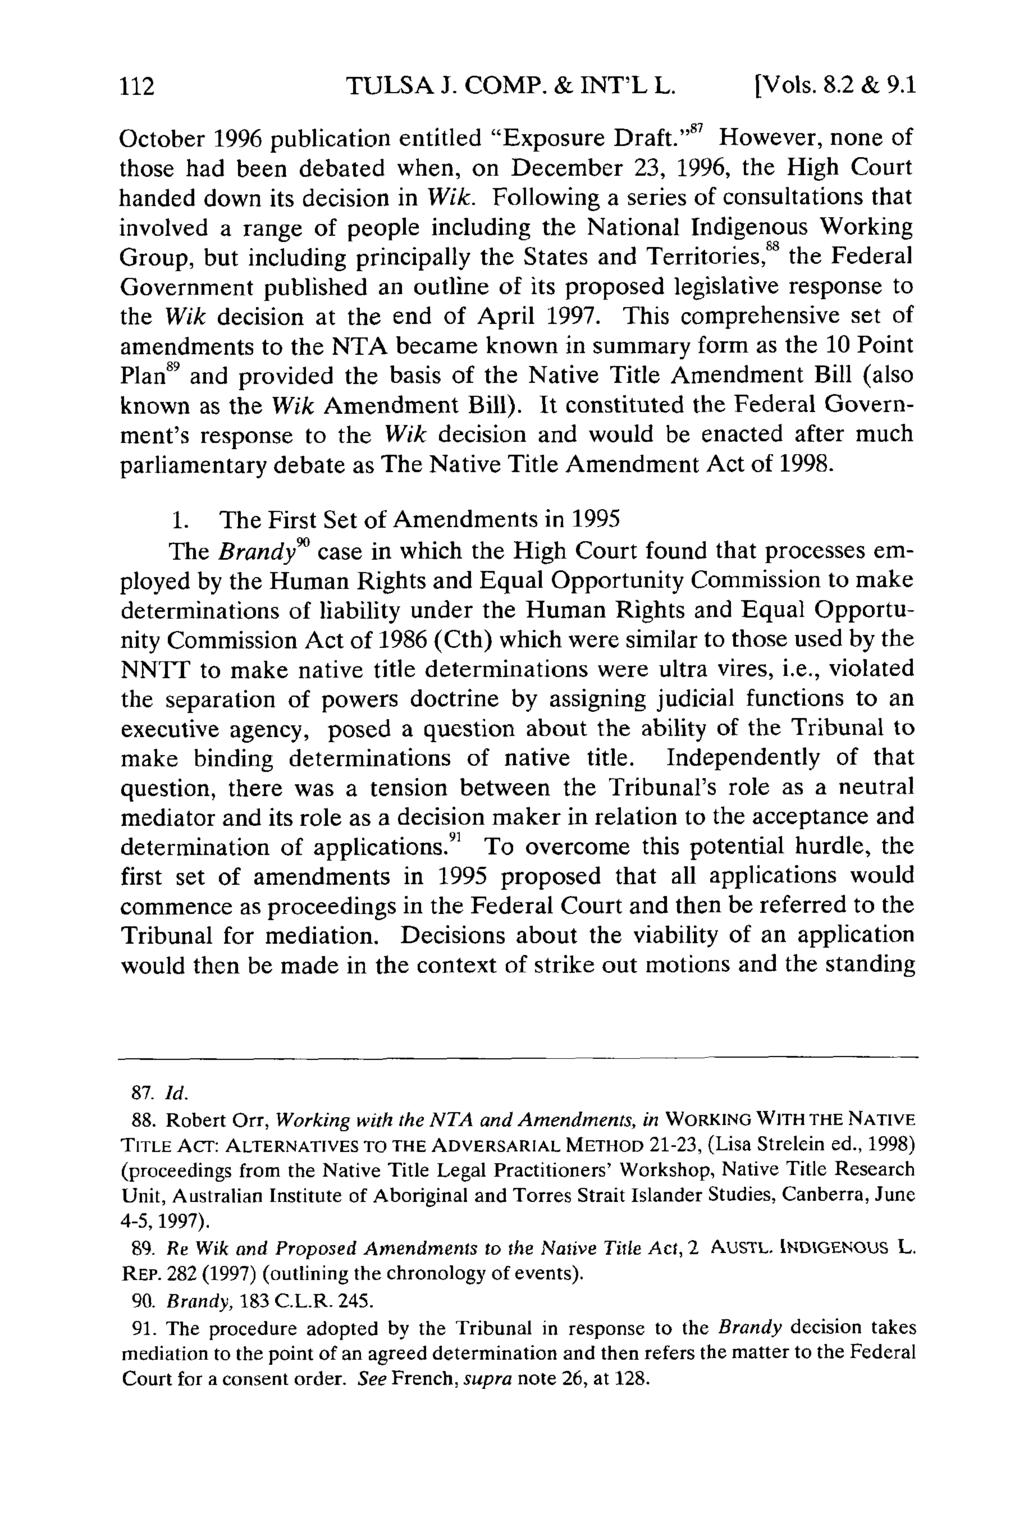 TULSA J. COMP. & INT'L L. [Vols. 8.2 & 9.1 October 1996 publication entitled "Exposure Draft.